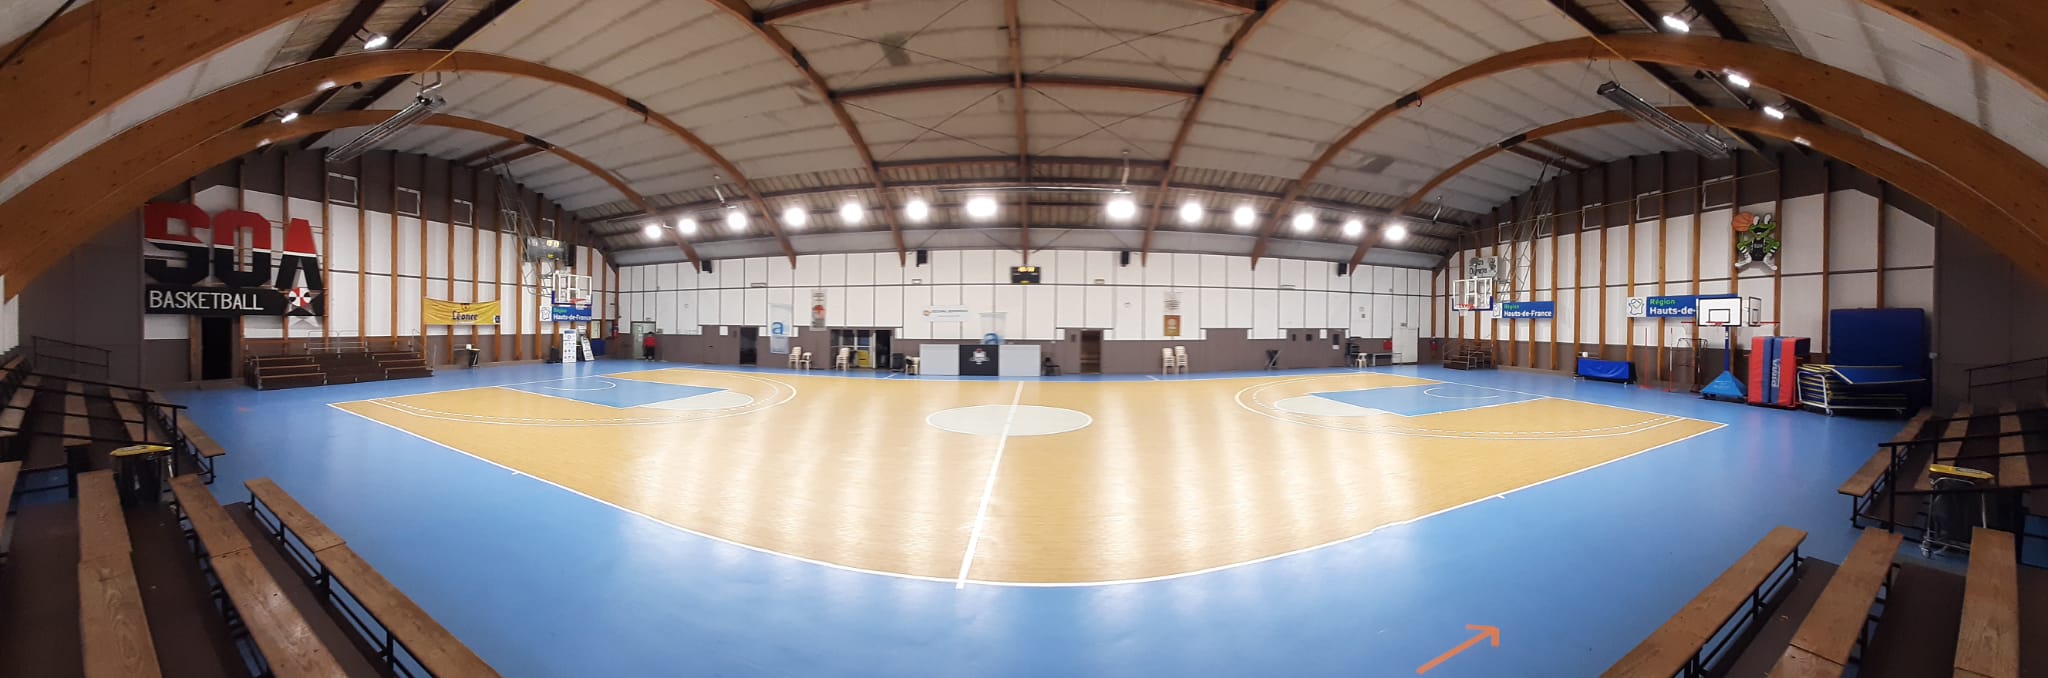 Salle de Basket Ball Armentières (59)